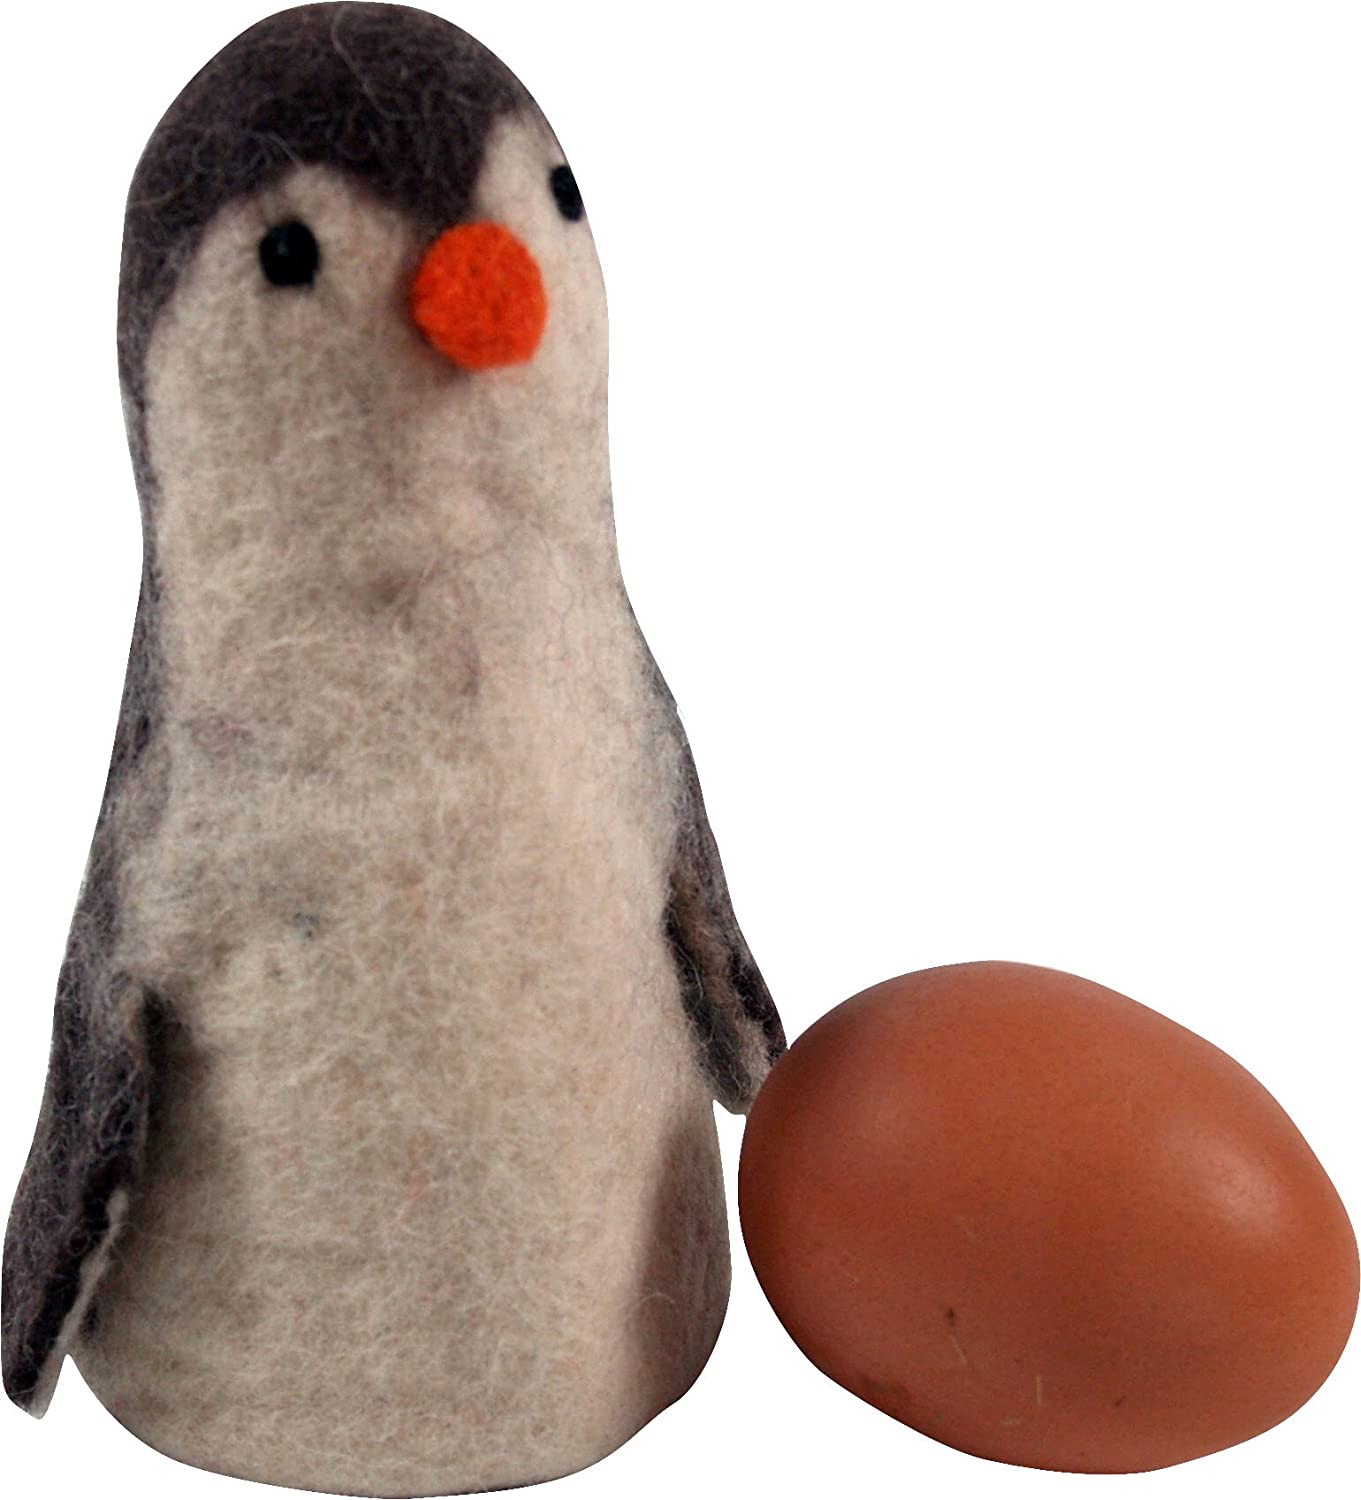 Guru-Shop GURU SHOP Felt Egg Cosy - Penguin, White, Kitchen Accessories, Miscellaneous